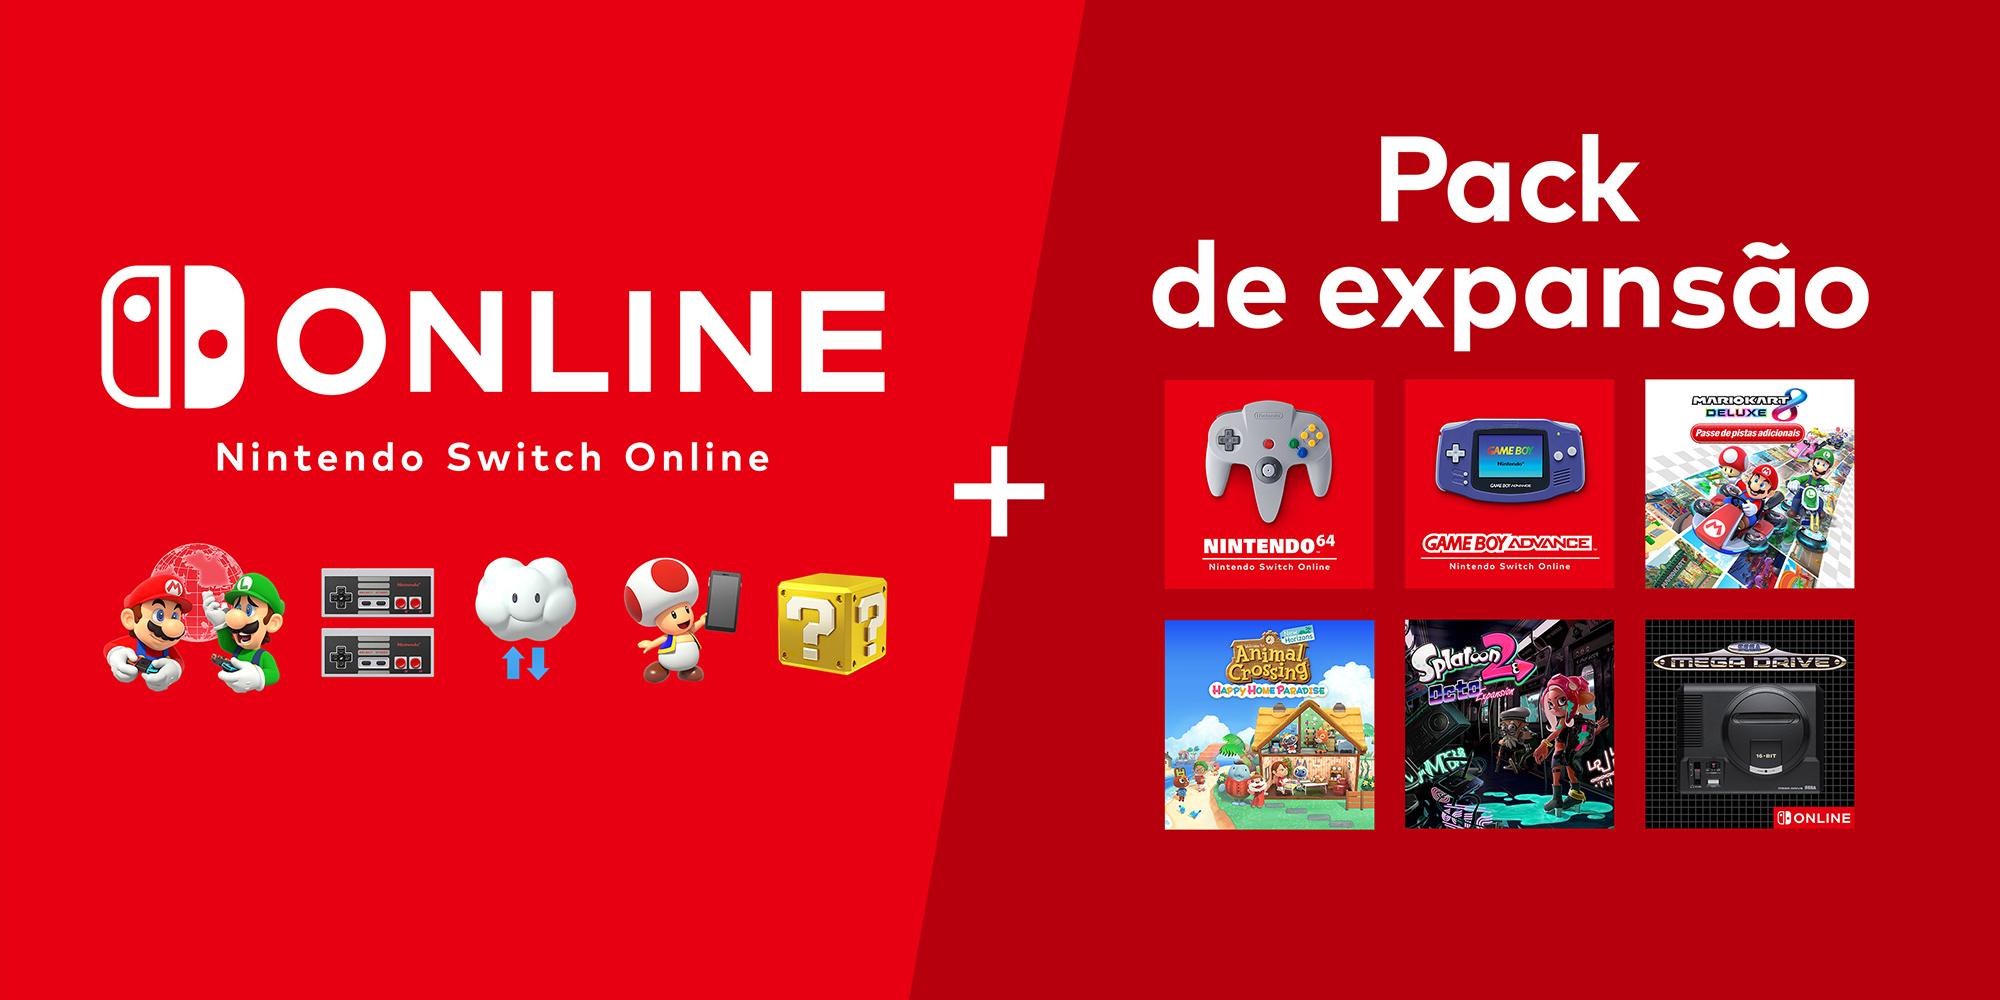 Nintendo Switch Online: preços, jogos e vantagens do Expansion Pack